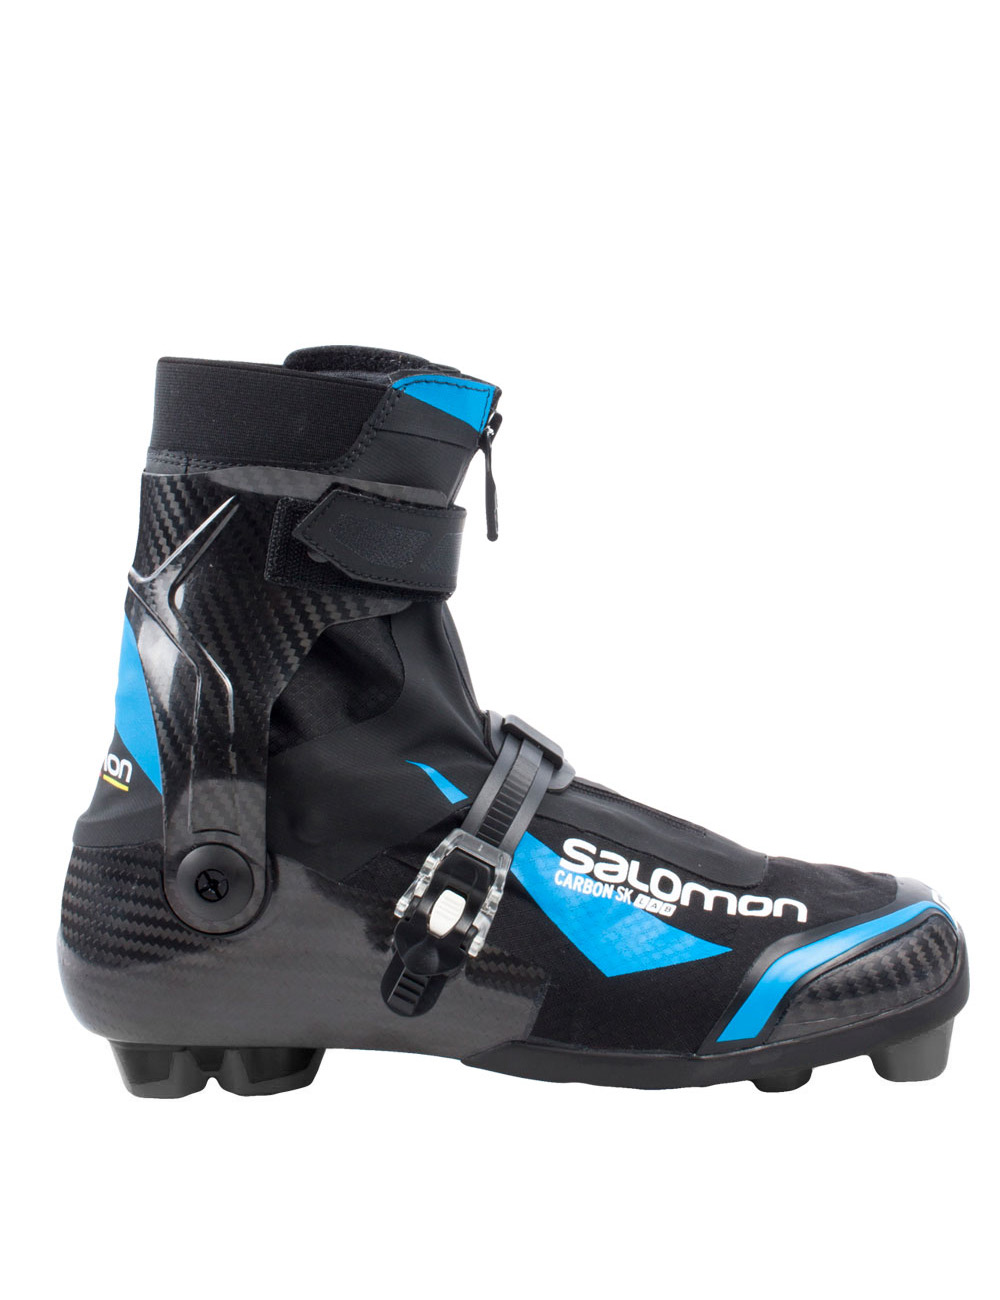 ботинки саломон лыжные коньковые